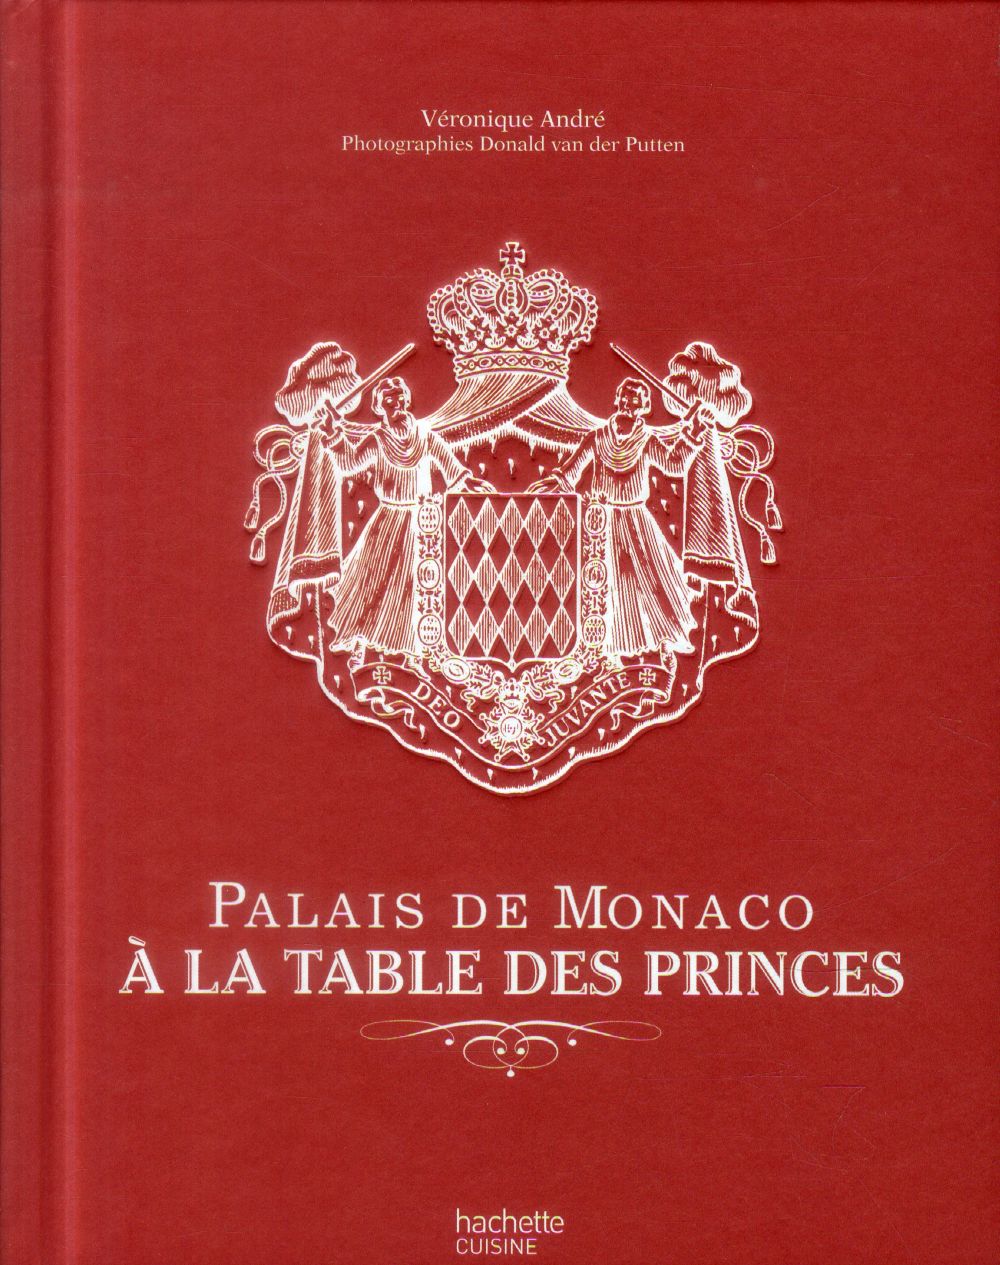 PALAIS DE MONACO : A LA TABLE DES PRINCES